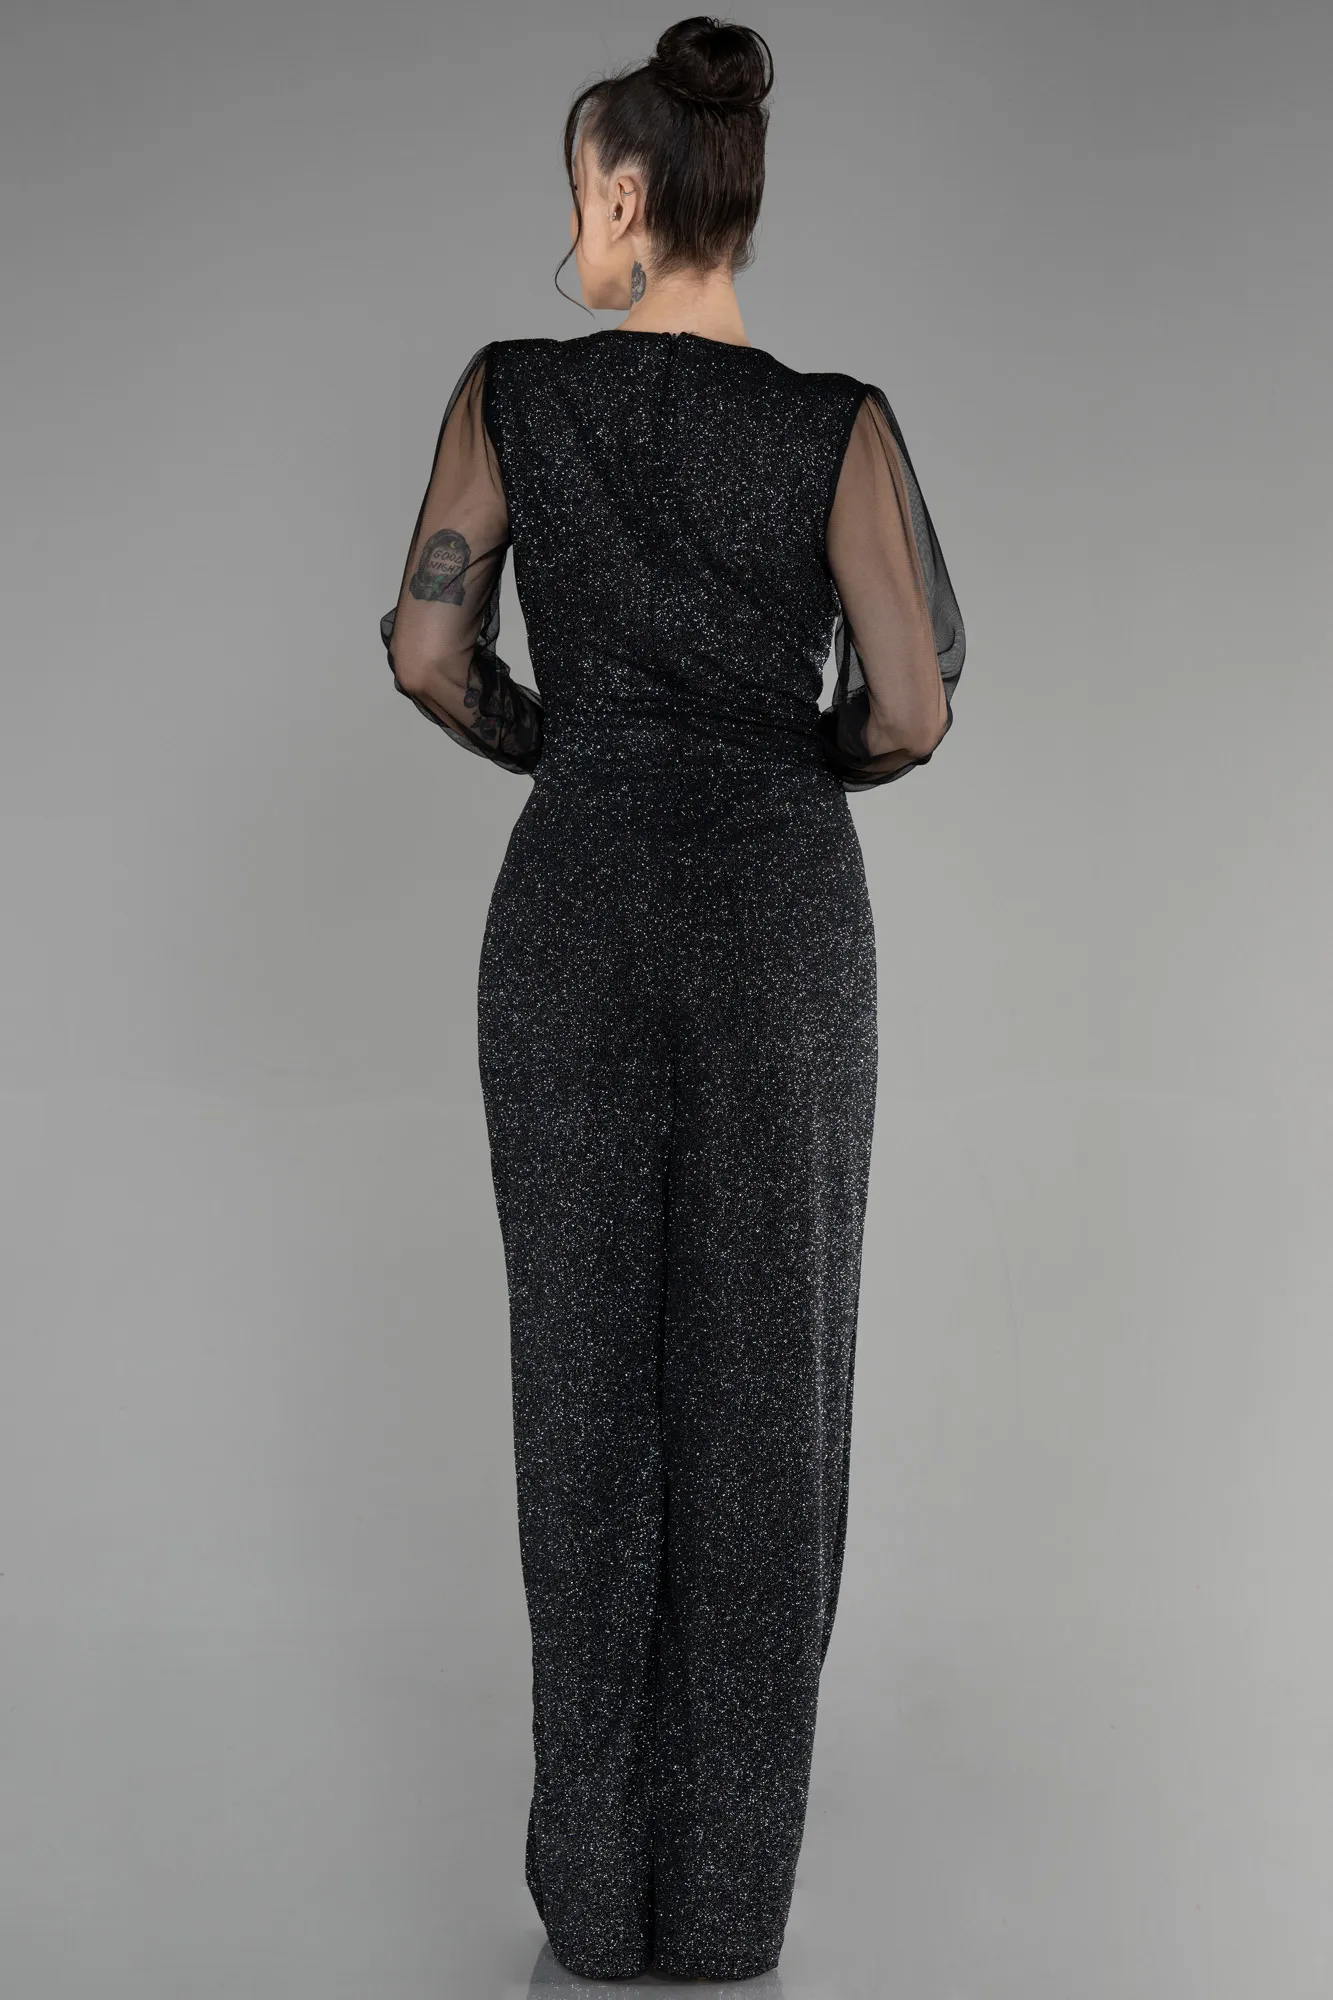 Black-Silver-Long Evening Dress ABT012